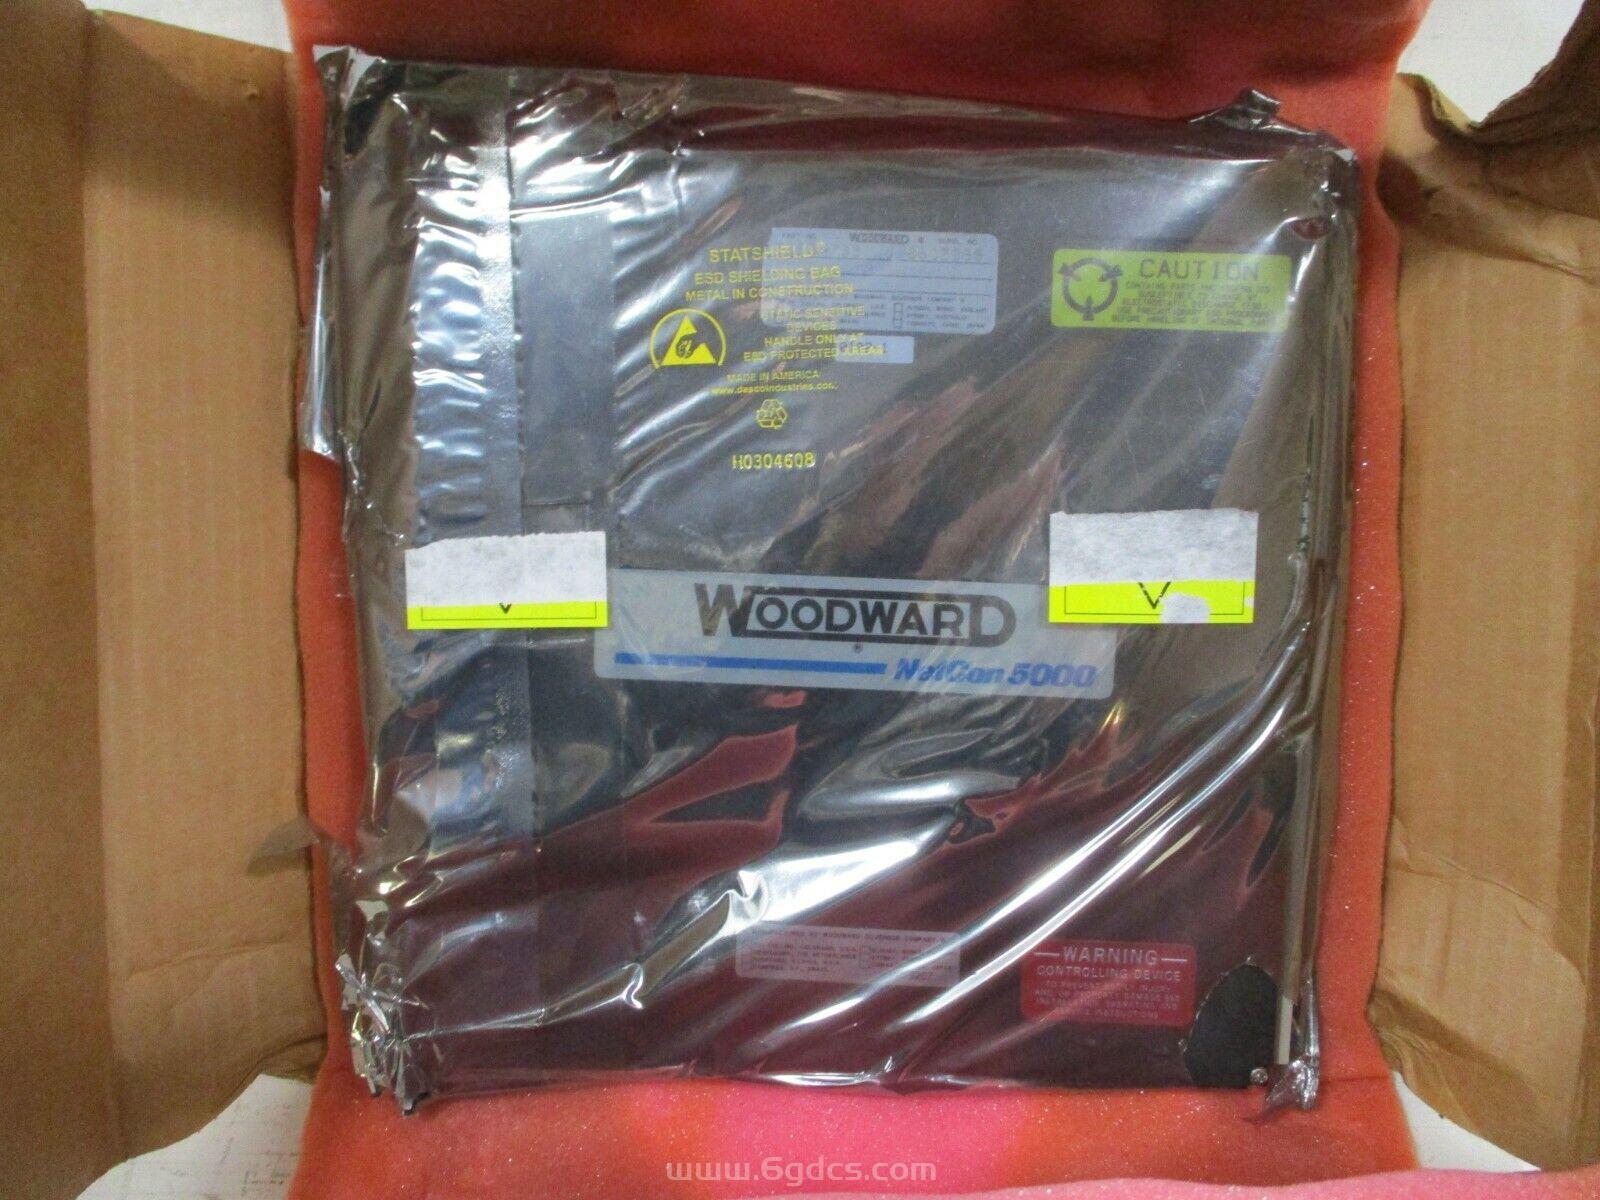 (5466-1000 电源供应插槽模块)现货 Woodward 伍德沃德的模块 全新原装进口供应